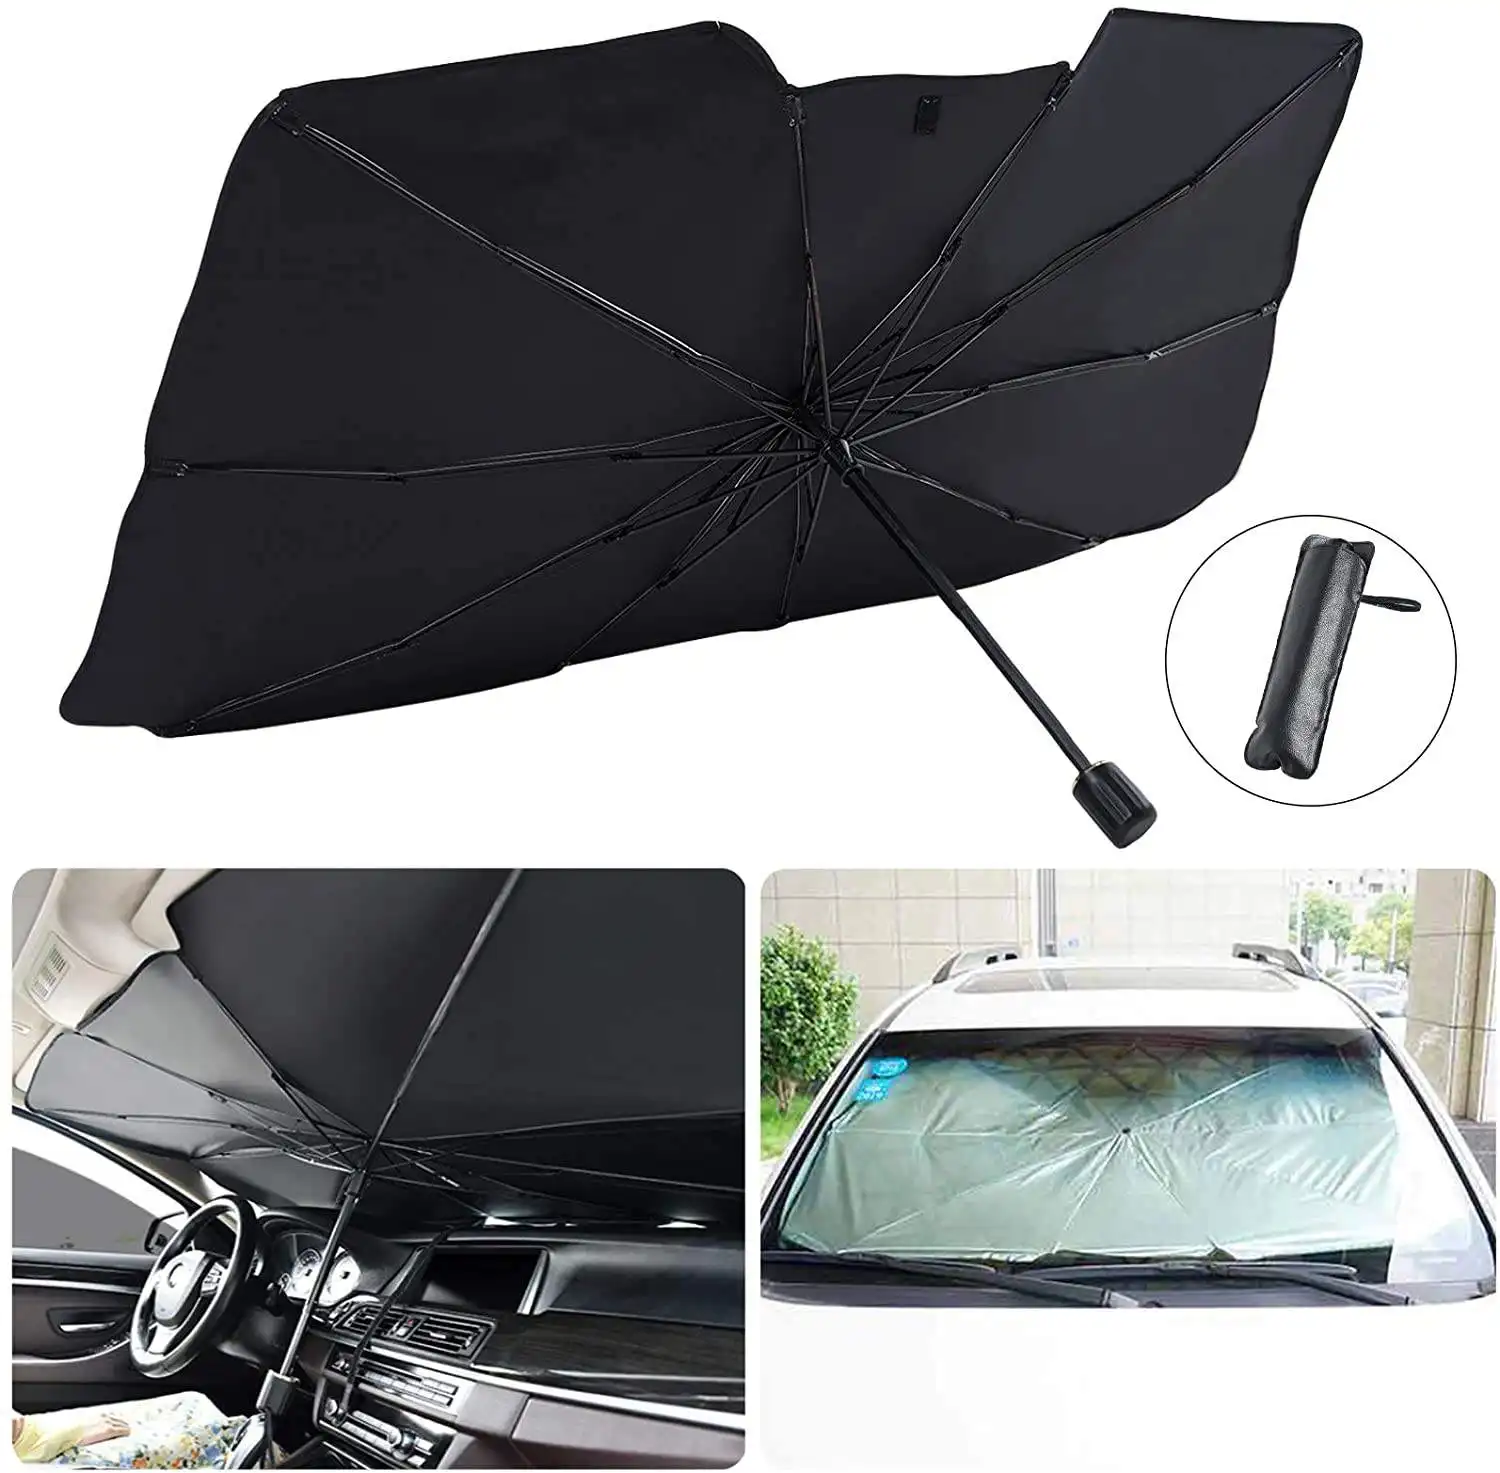 Araba şemsiyesi araba ön cam koruyucu katlanabilir araba şemsiyesi s özelleştirilmiş anti-ultraviyole aksesuarları cam şemsiye